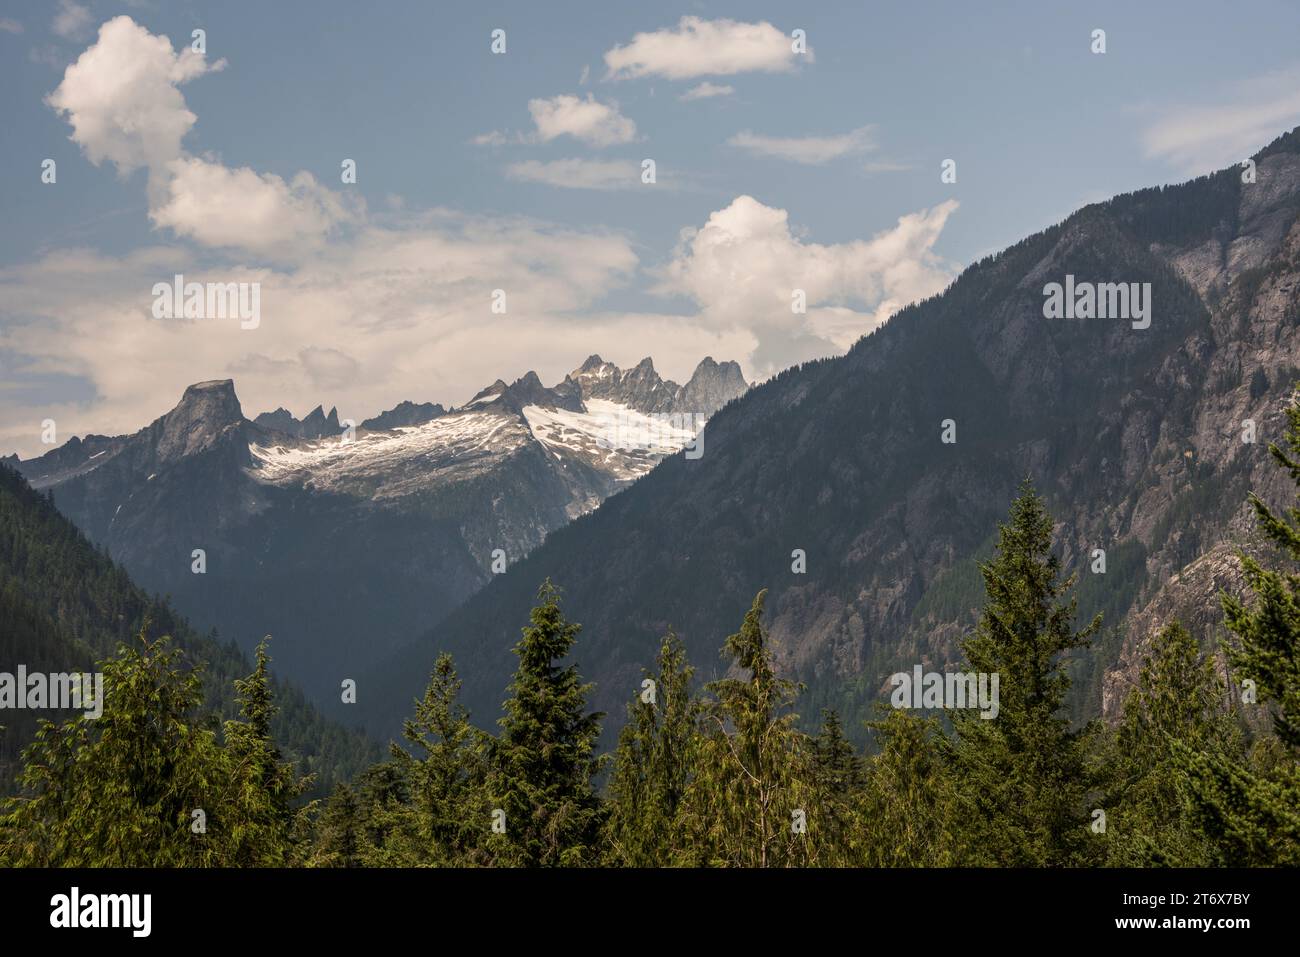 La catena montuosa Pickett Range, vista dal sentiero naturalistico presso il centro visitatori, il parco nazionale delle cascate nord, newhalem, washington, usa Foto Stock